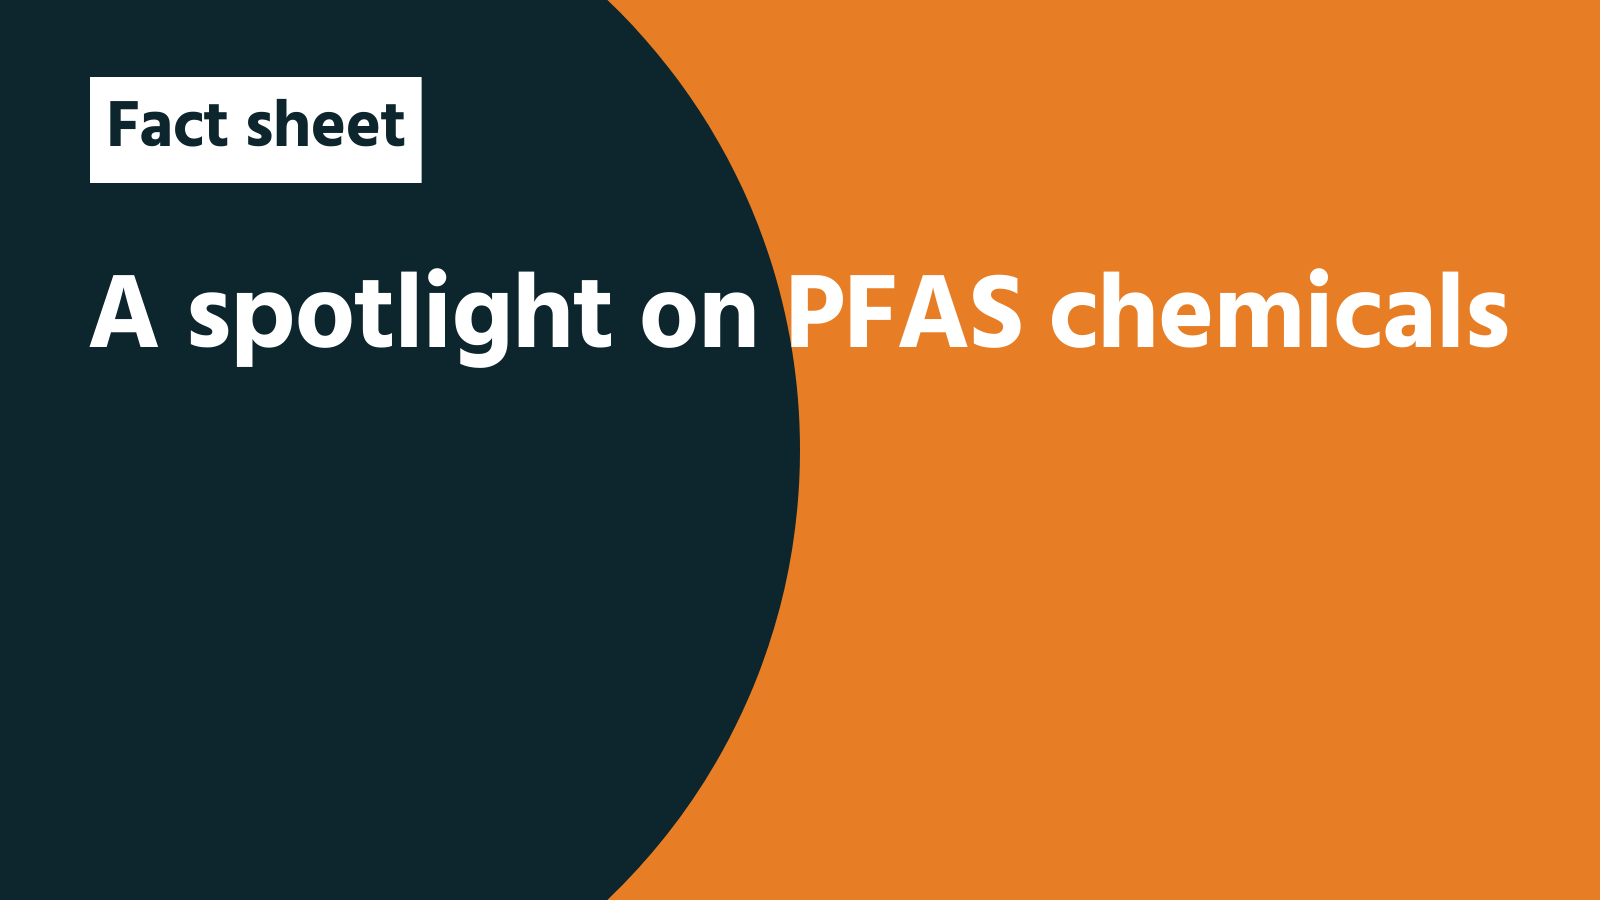 Fact sheet: A spotlight on PFAS chemicals